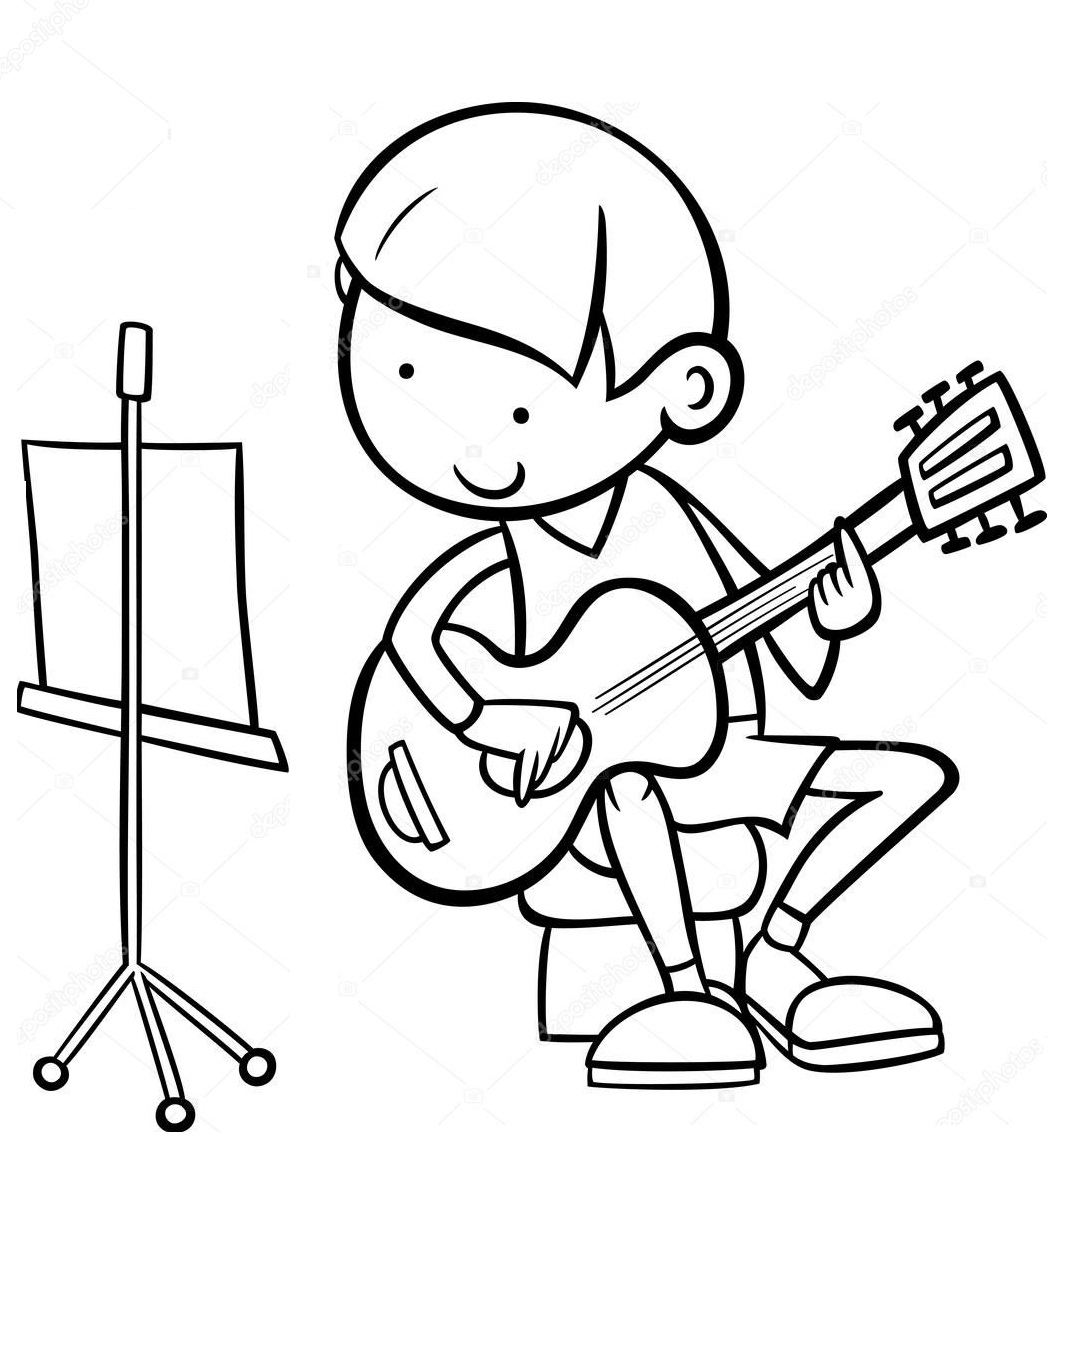 Tô màu cậu bé chơi guitar theo bài